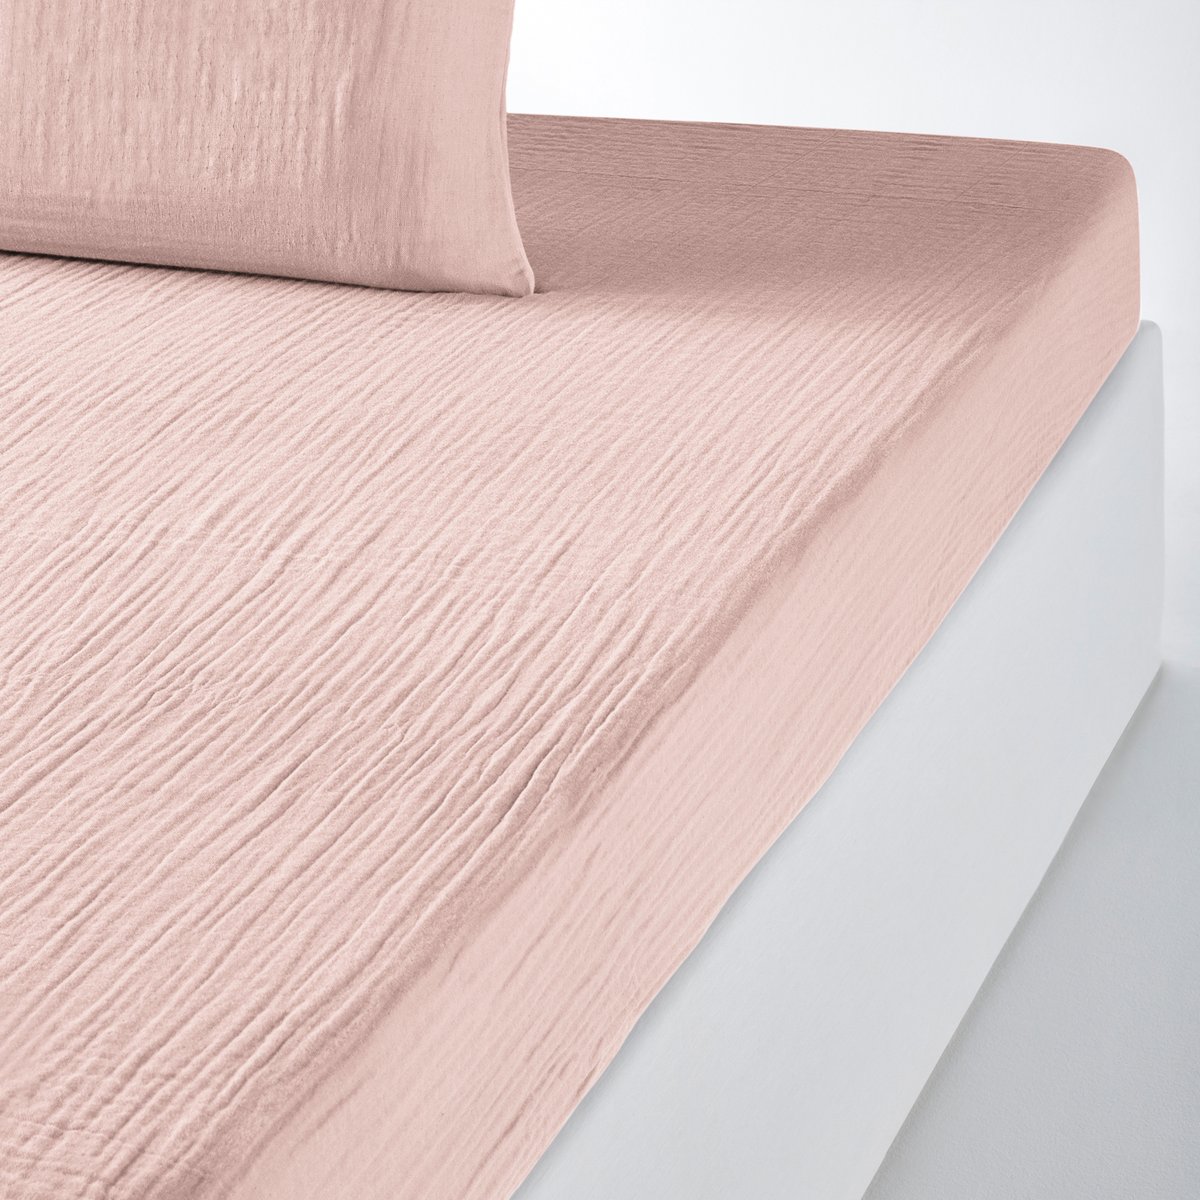 Простыня натяжная однотонная из хлопчатобумажной газовой ткани Snow 90 x 190 см розовый штора с панелями из хлопчатобумажной газовой ткани griotte 260 x 140 см розовый